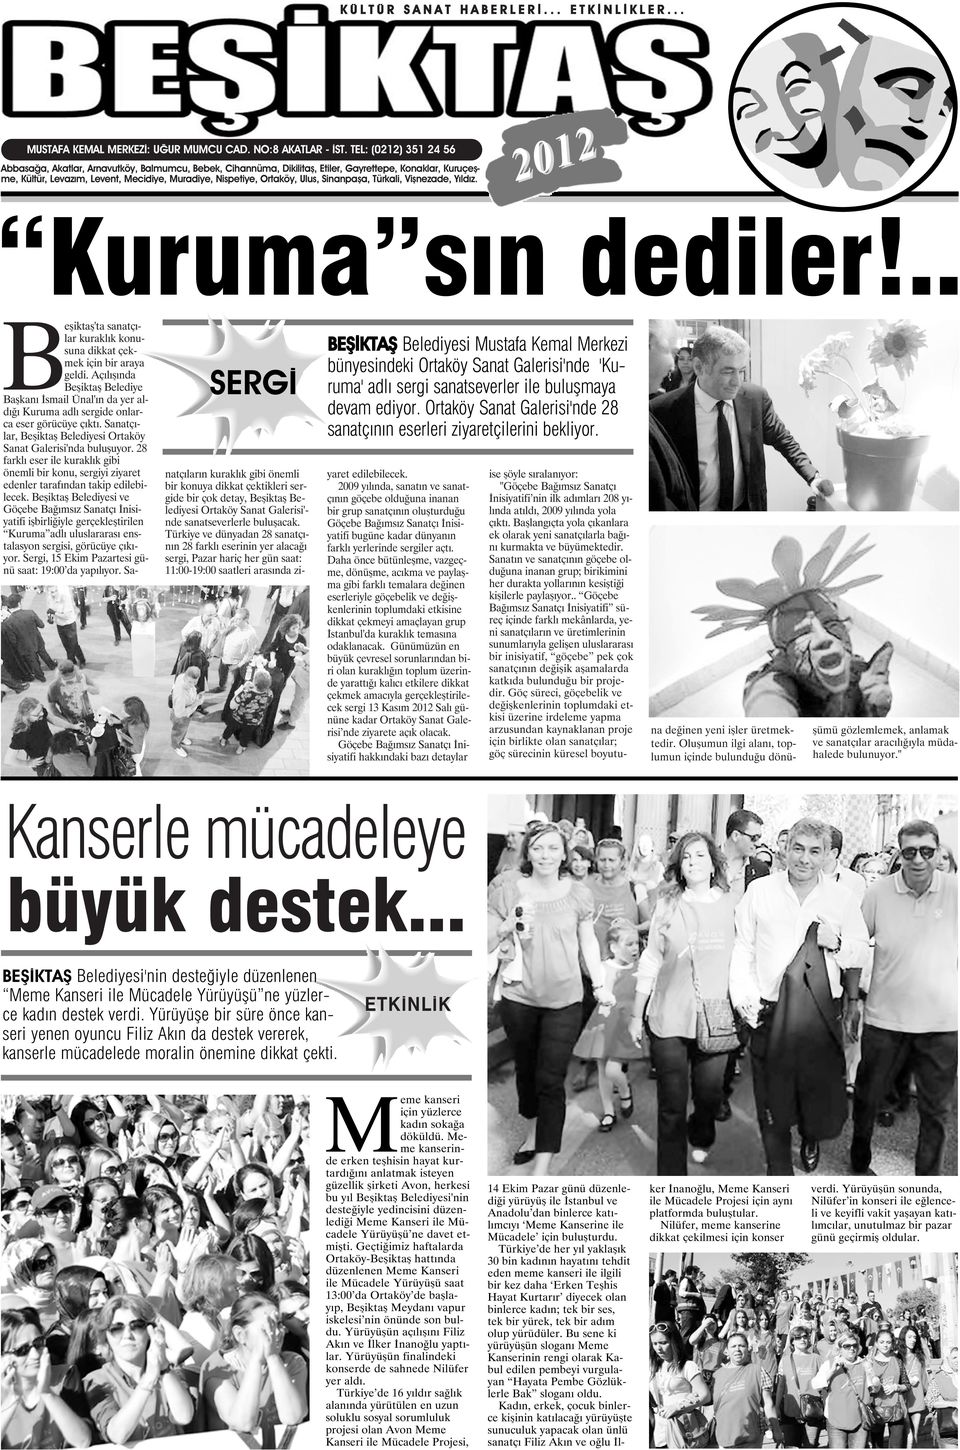 Ulus, Sinanpaşa, Türkali, Vişnezade, Yıldız. 2012 Kuruma sın dediler!